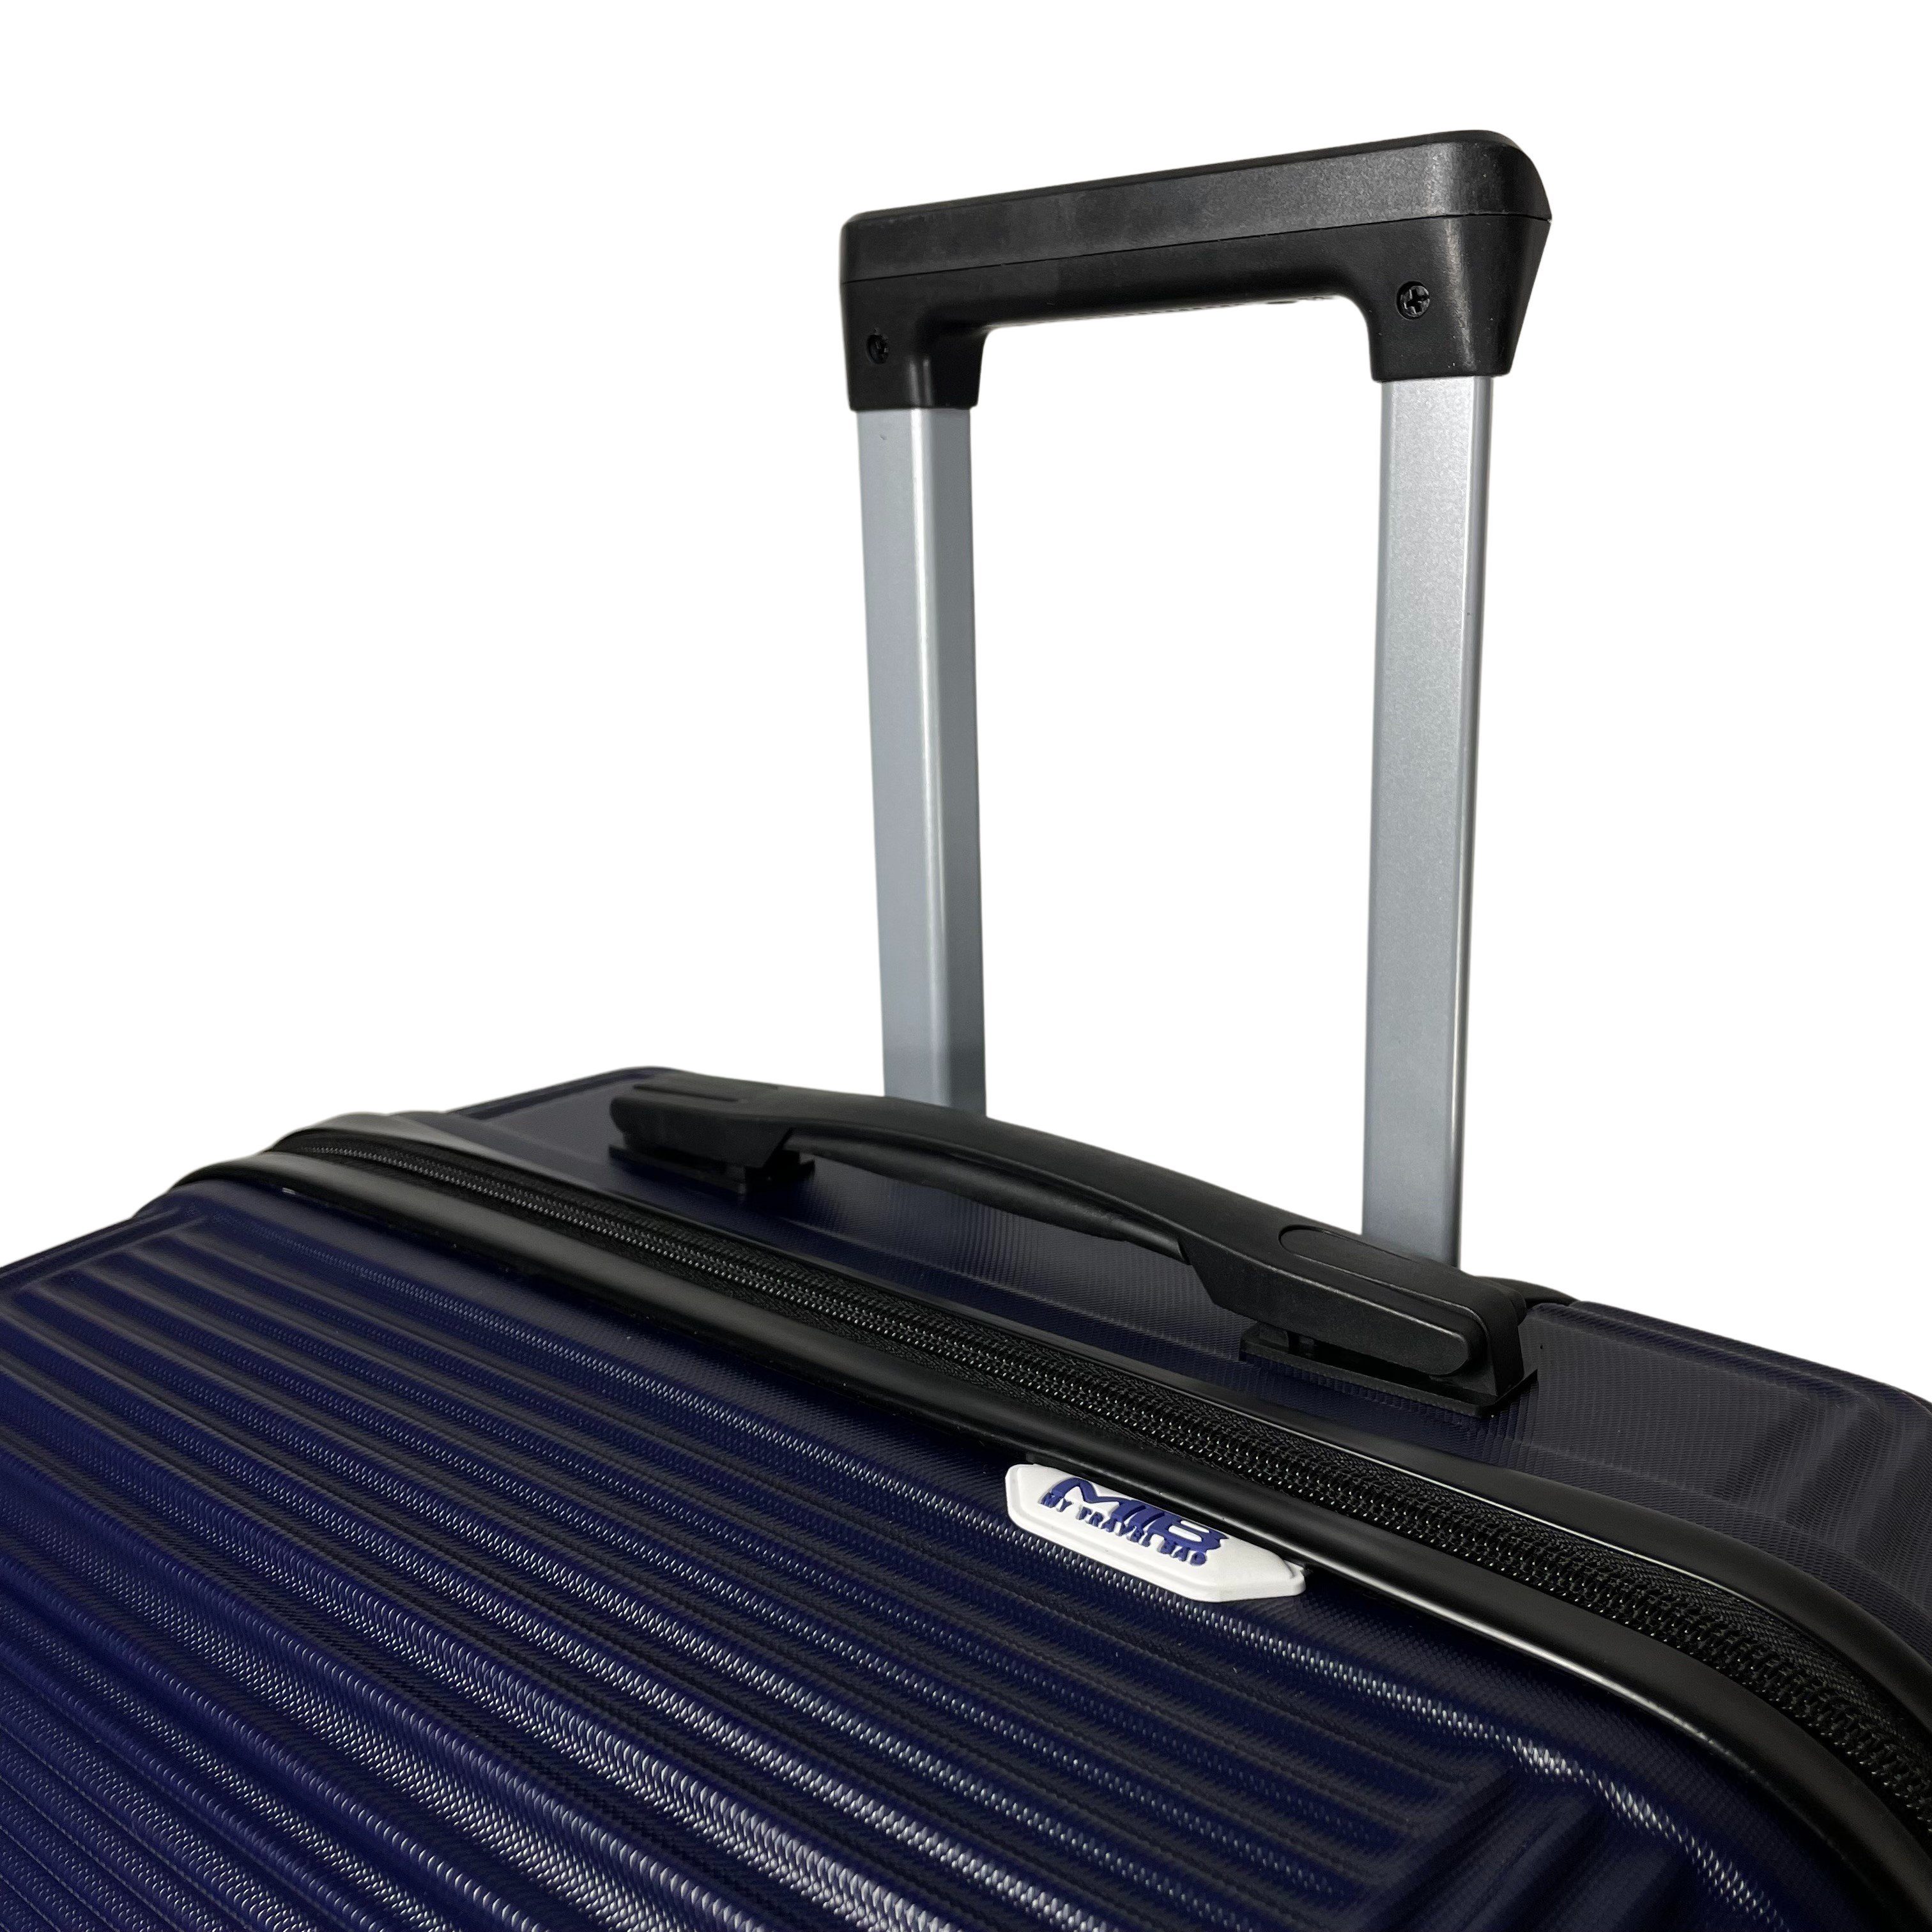 (Handgepäck-Mittel-Groß-Set) Reisekoffer MTB ABS Koffer Blau Hartschalenkoffer